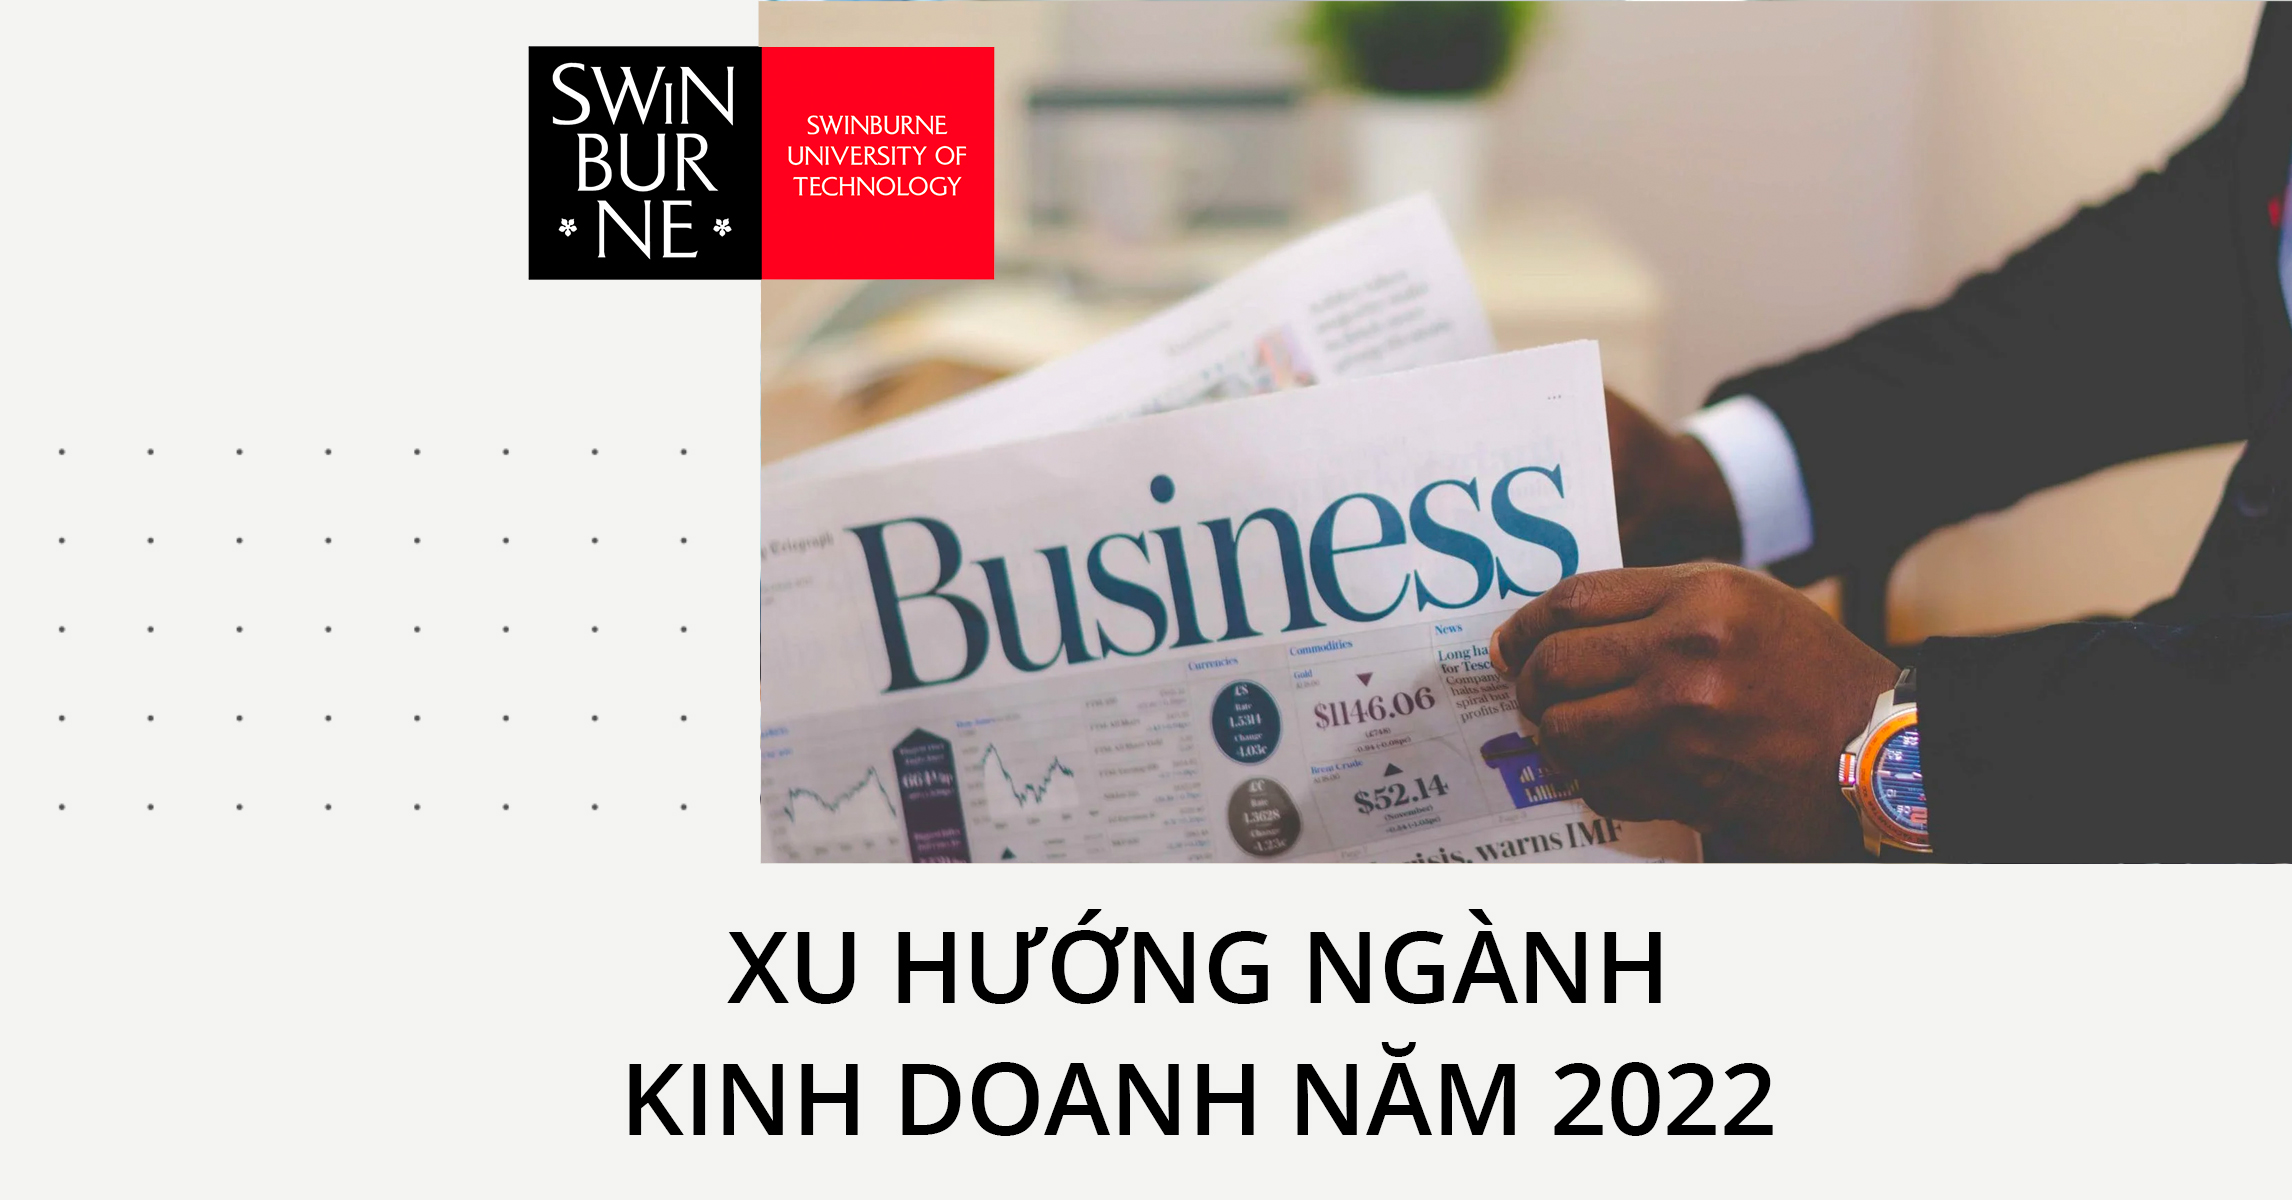 Ngành Kinh doanh là gì? Xu hướng ngành kinh doanh năm 2022